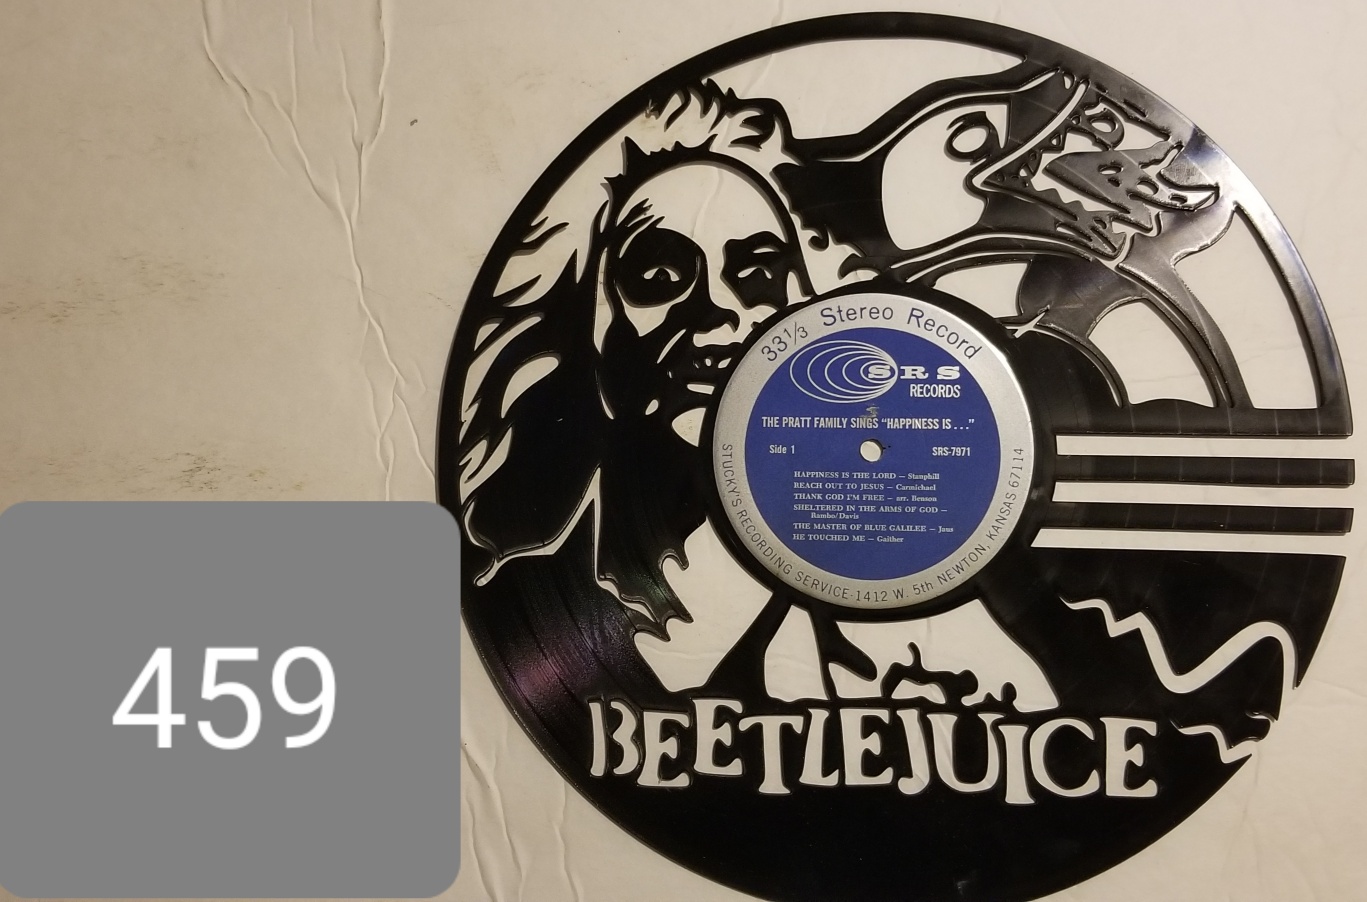 0459 R - Beetlejuice